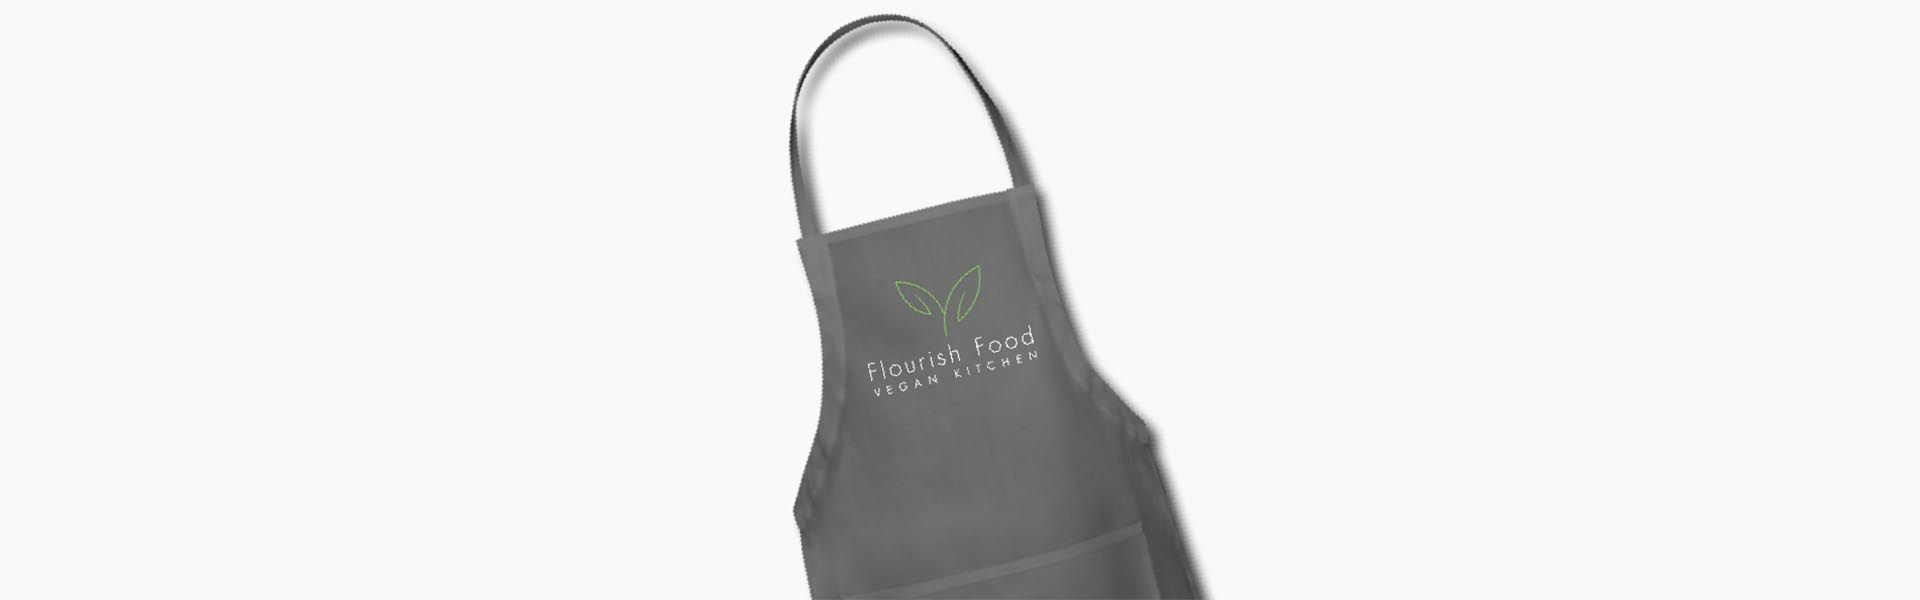 an apron with flourish food vegan kitchen written on it